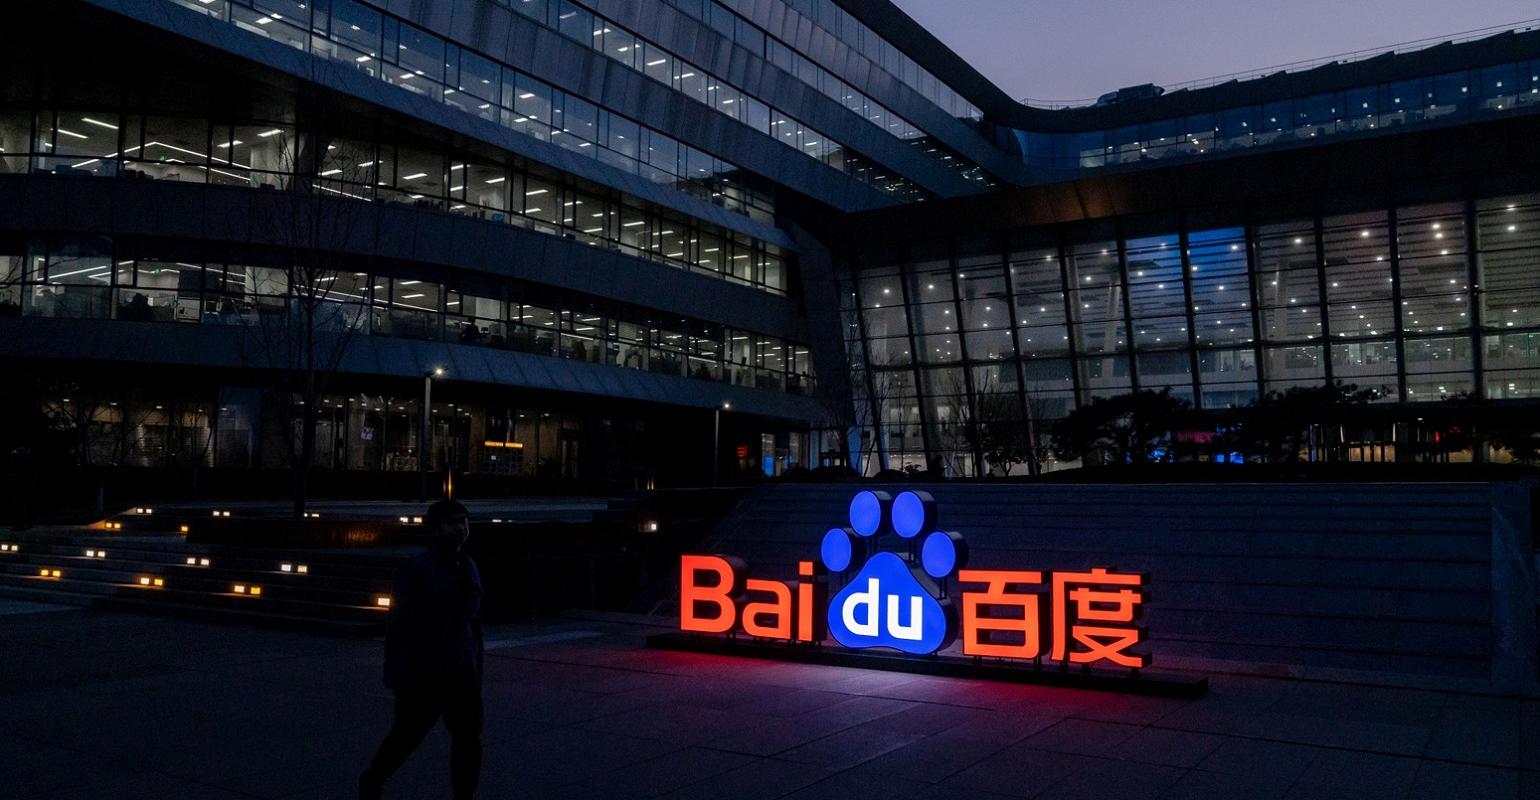 Phó chủ tịch Tập đoàn Baidu dấy lên làn sóng phẫn nộ với hàng loạt phát ngôn: 